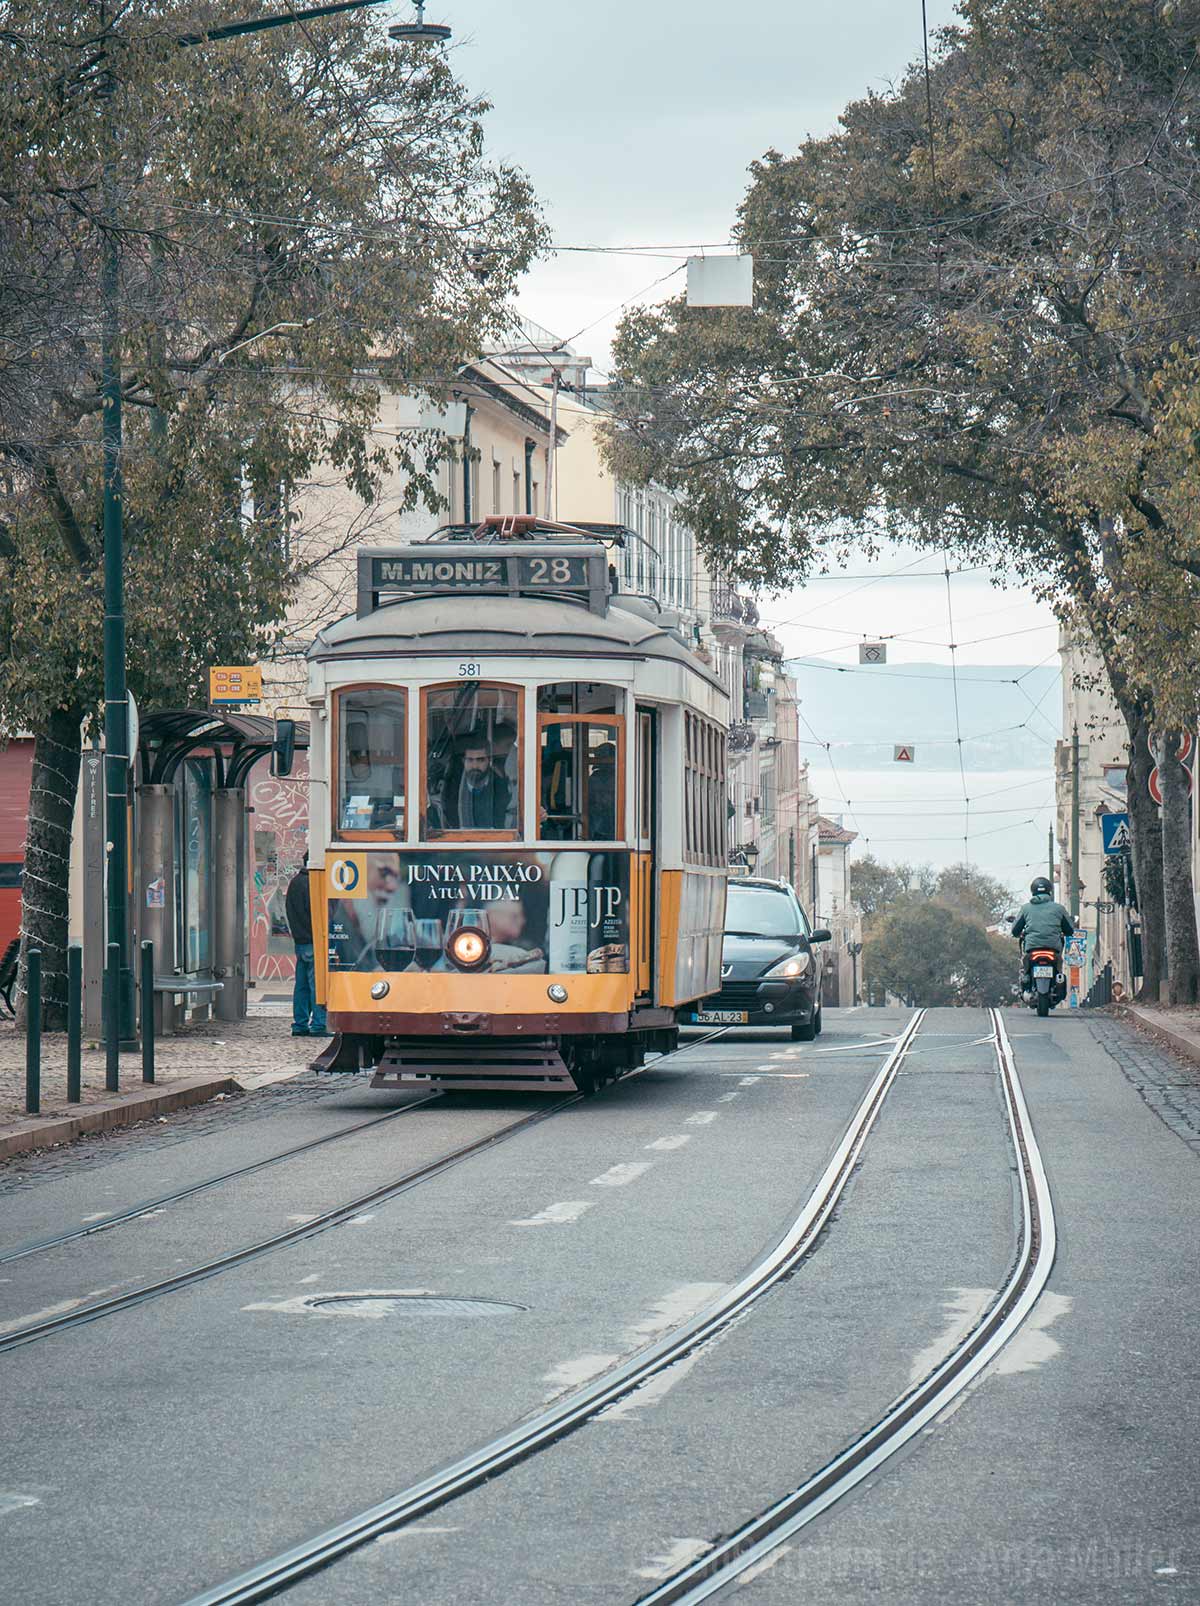 Eine der beliebtesten Lissabon Sehenswürdigeiten: Tram Eléctrico 28